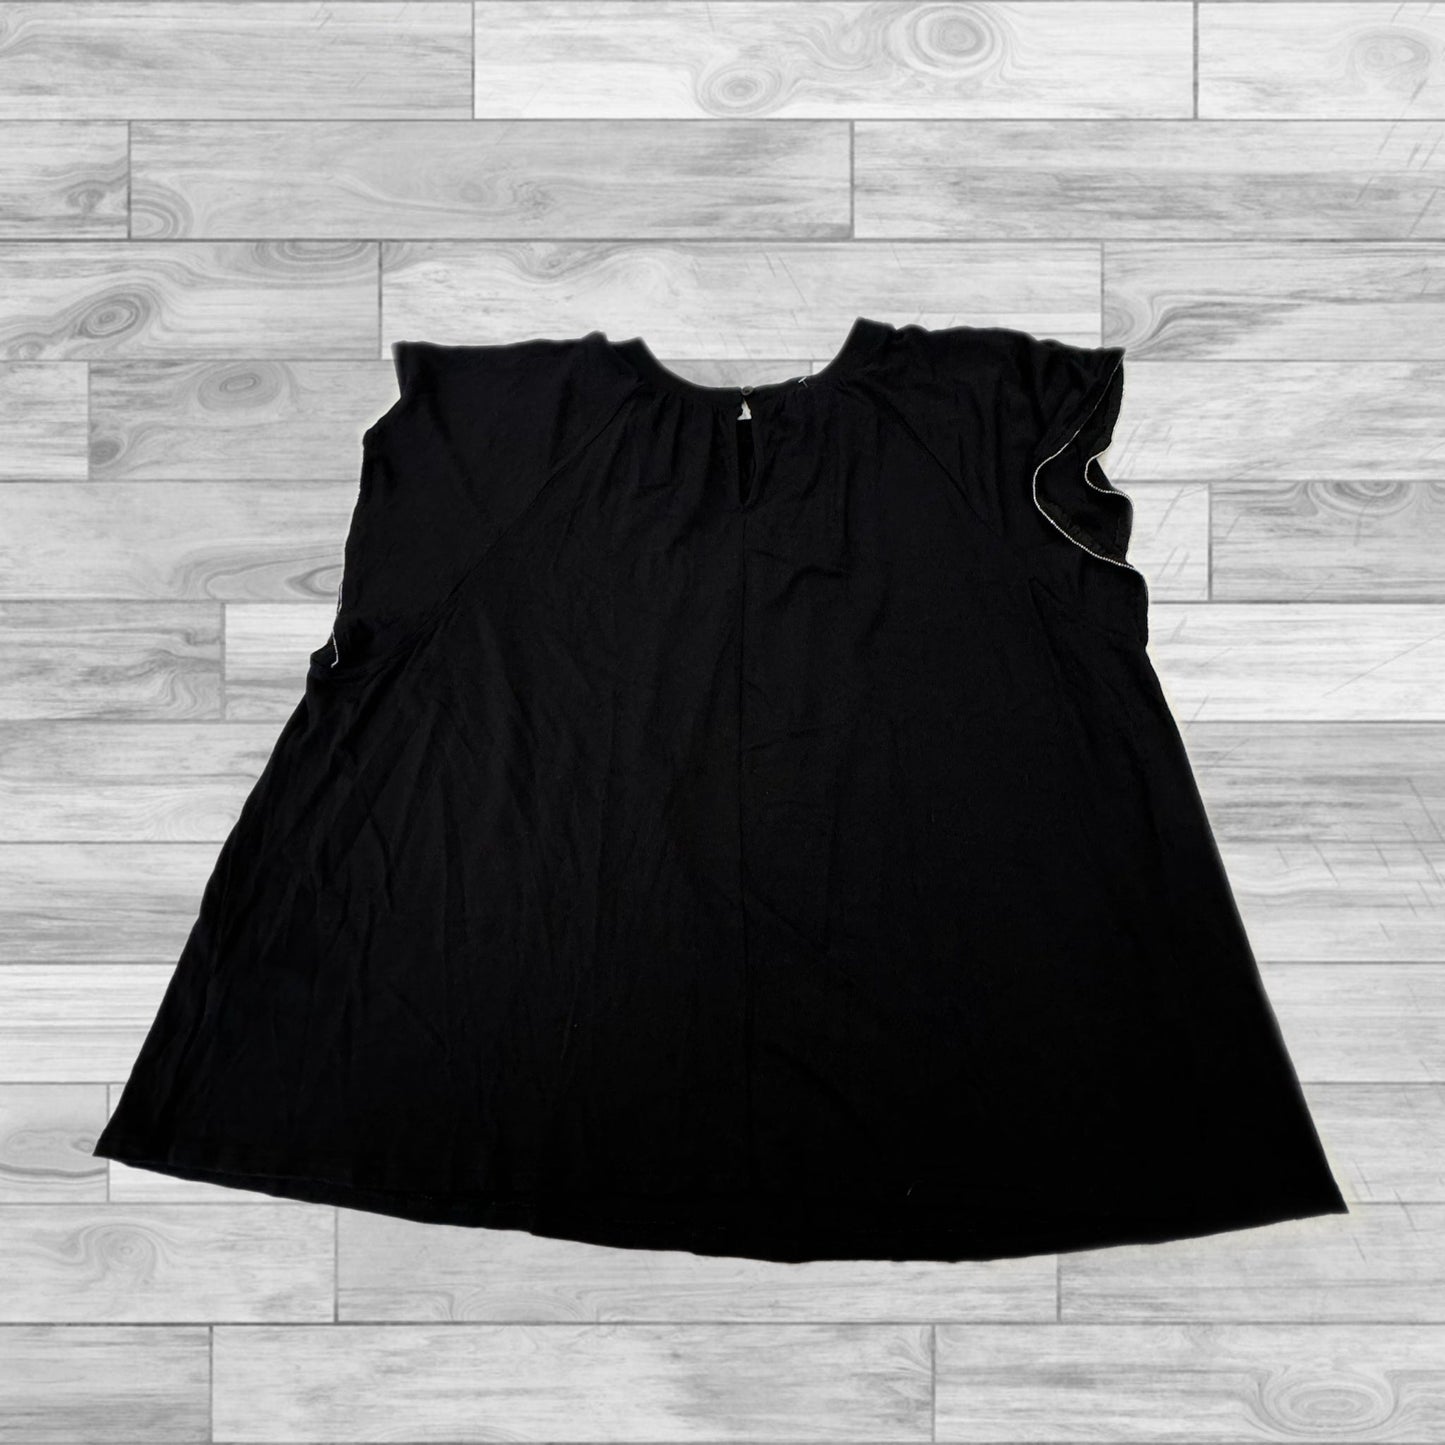 Black Top Short Sleeve Apt 9, Size Xl